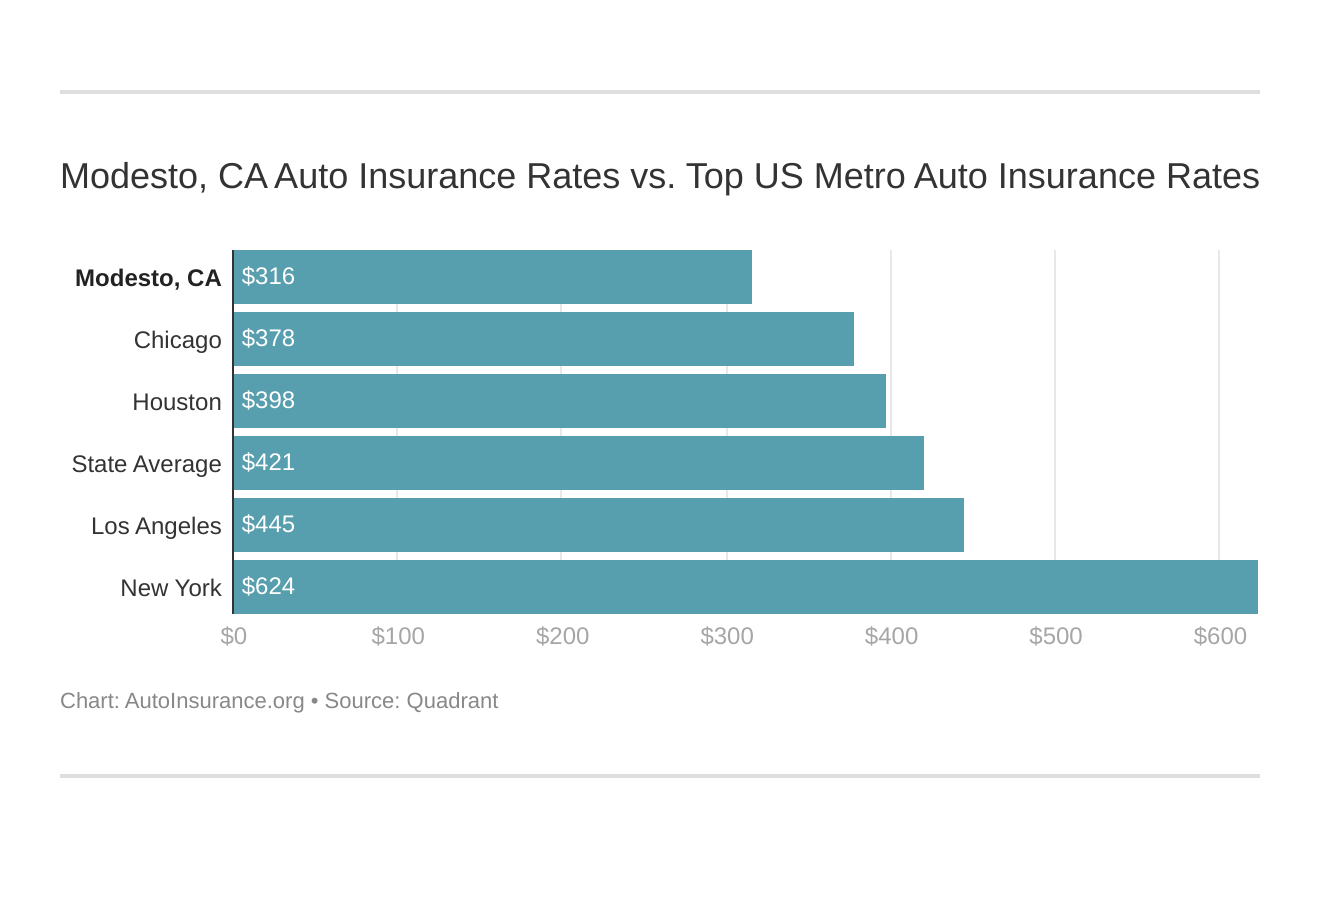 Modesto, CA Auto Insurance Rates vs. Top US Metro Auto Insurance Rates